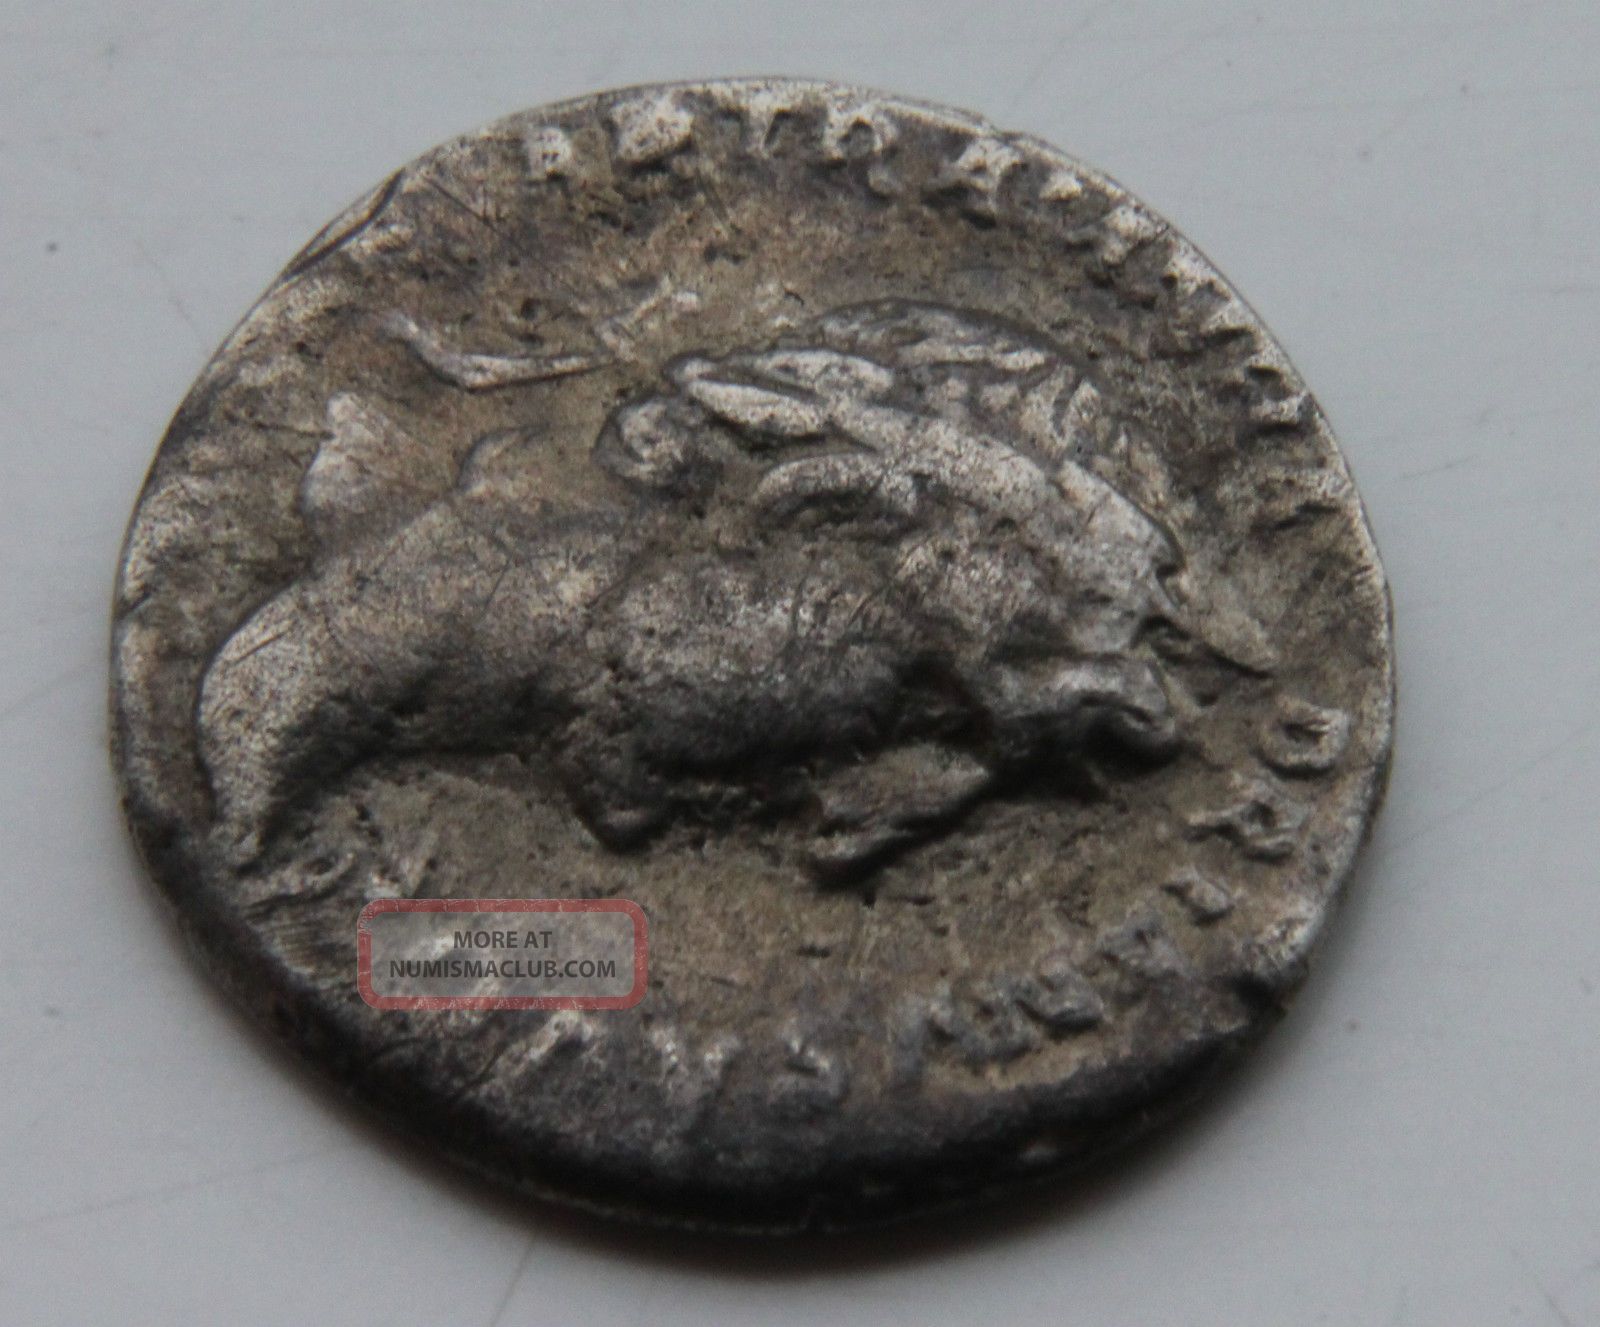 who was denarius